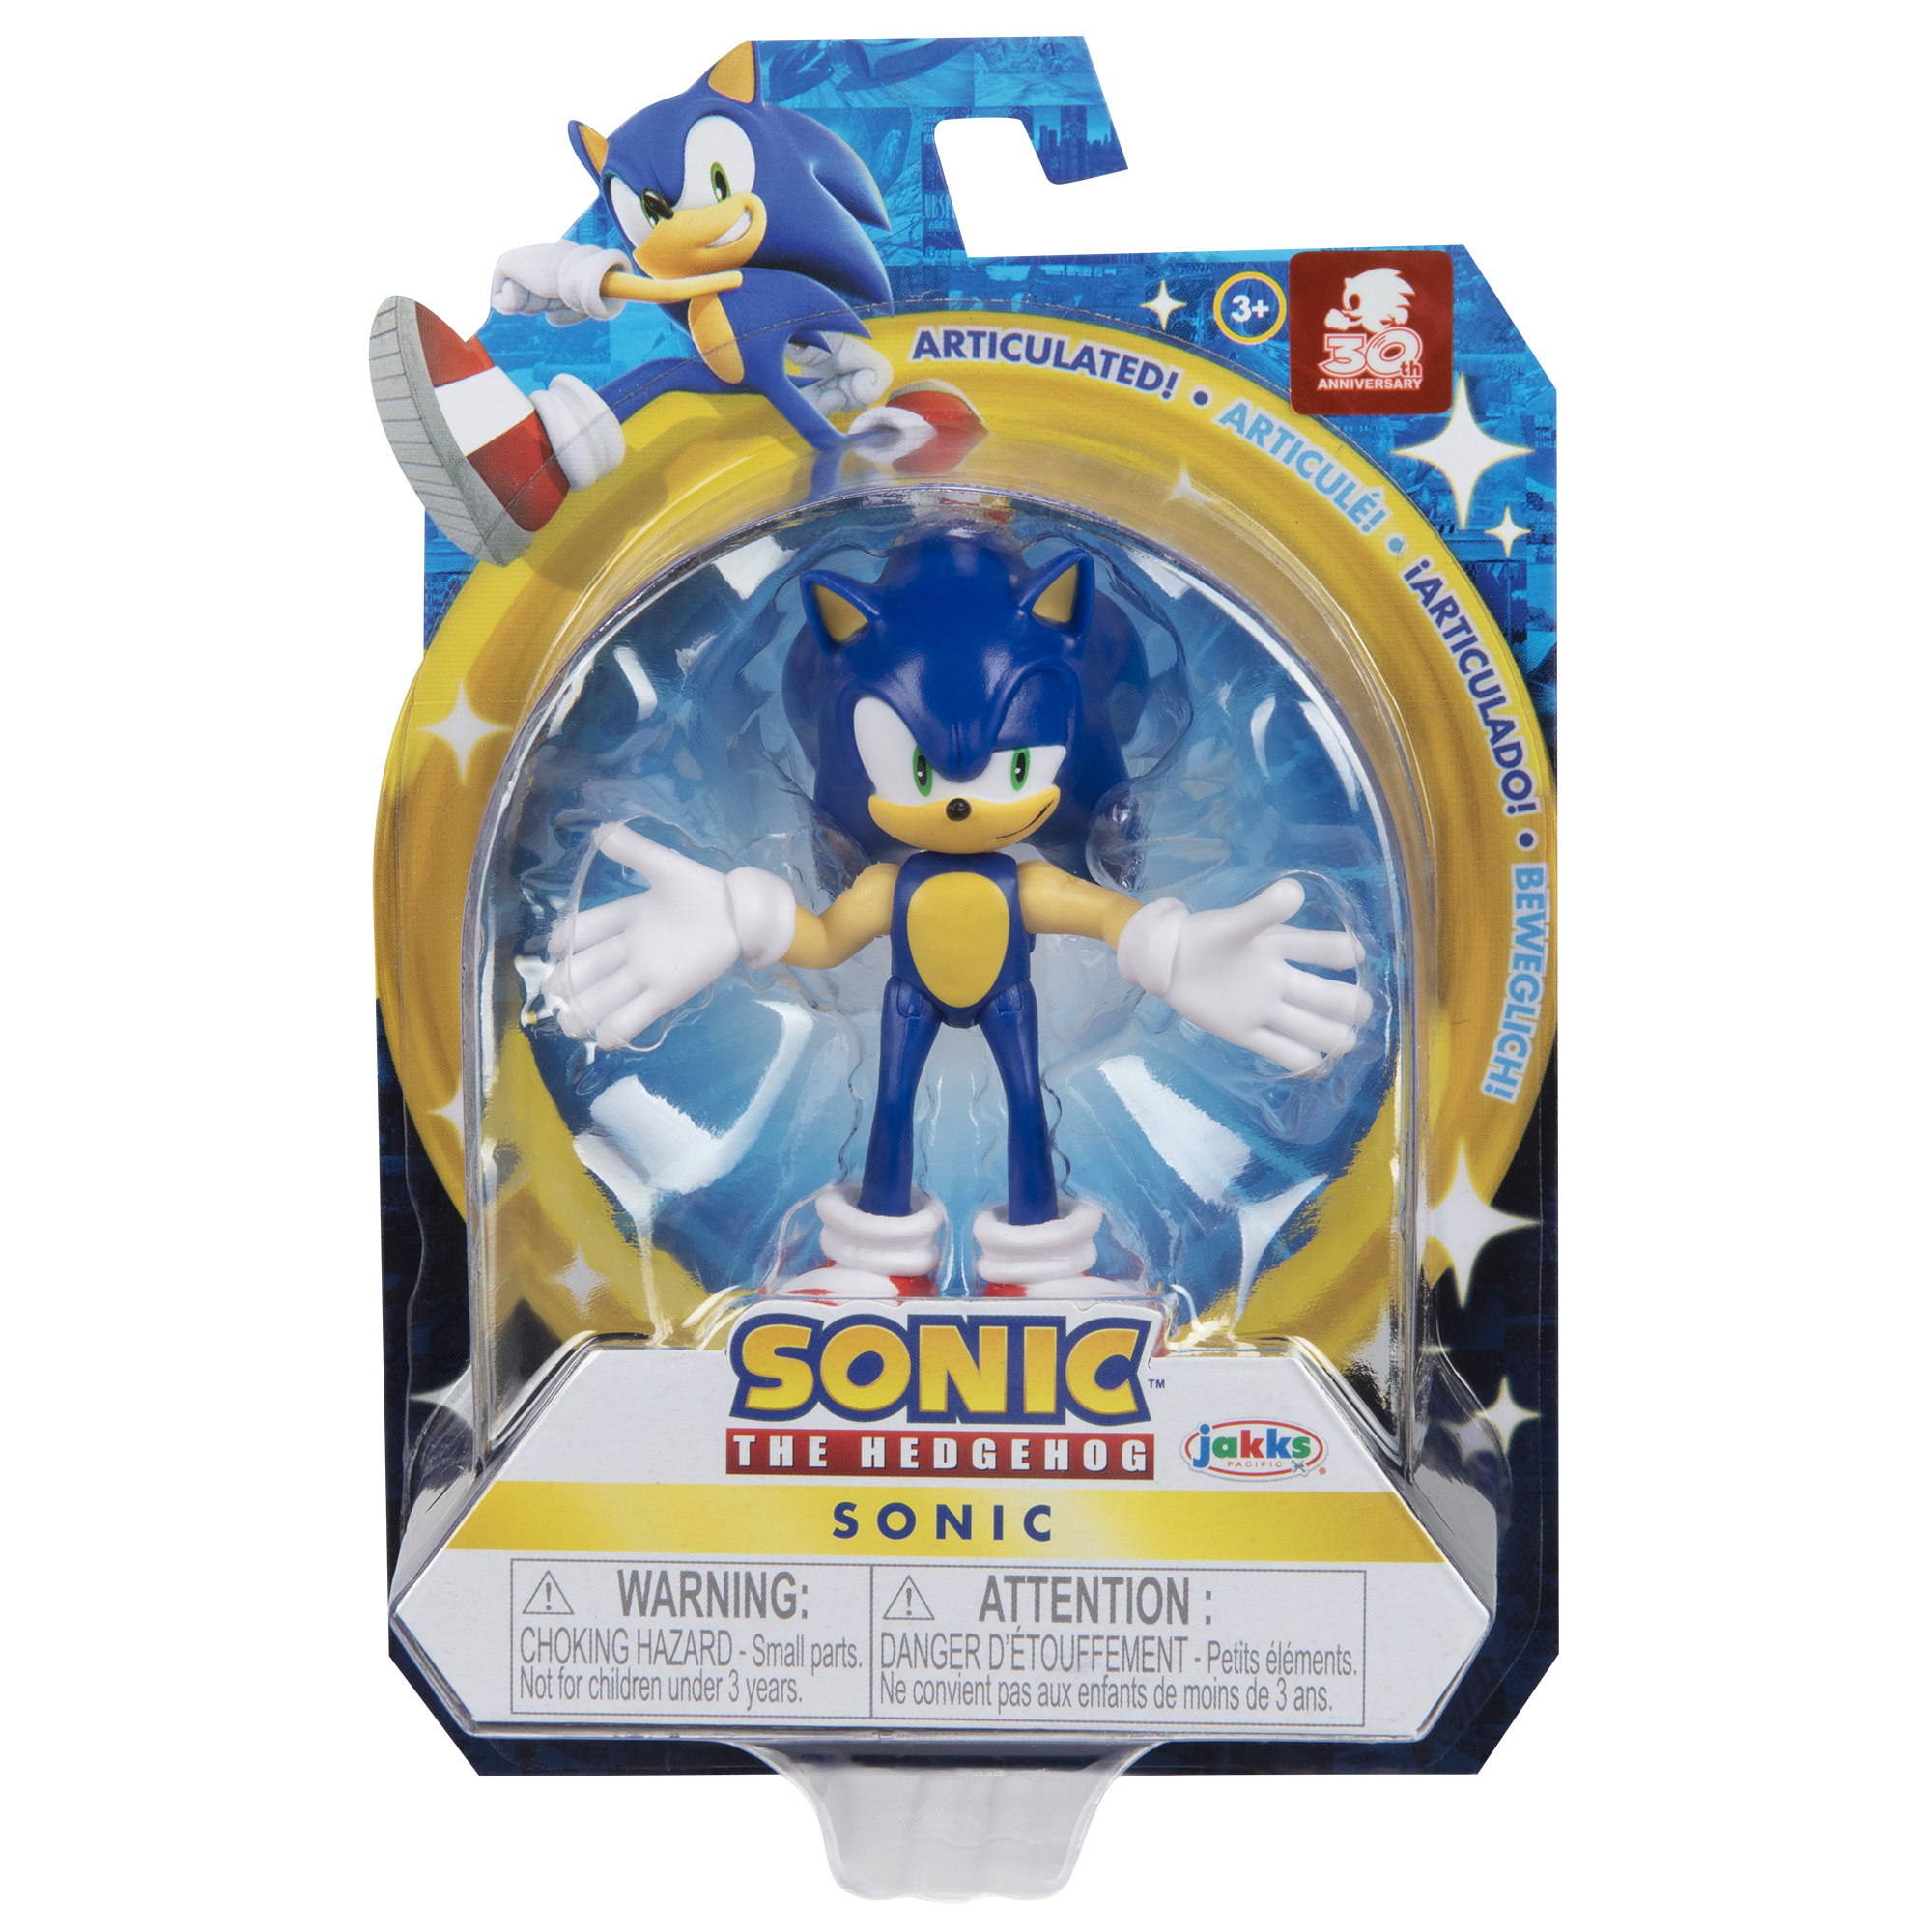 Sonic tab. Фигурка Sonic 30th. Фигурка Sonic the Hedgehog Соник 6 см синий. Сонник игрушка. Фигурки Соника купить.